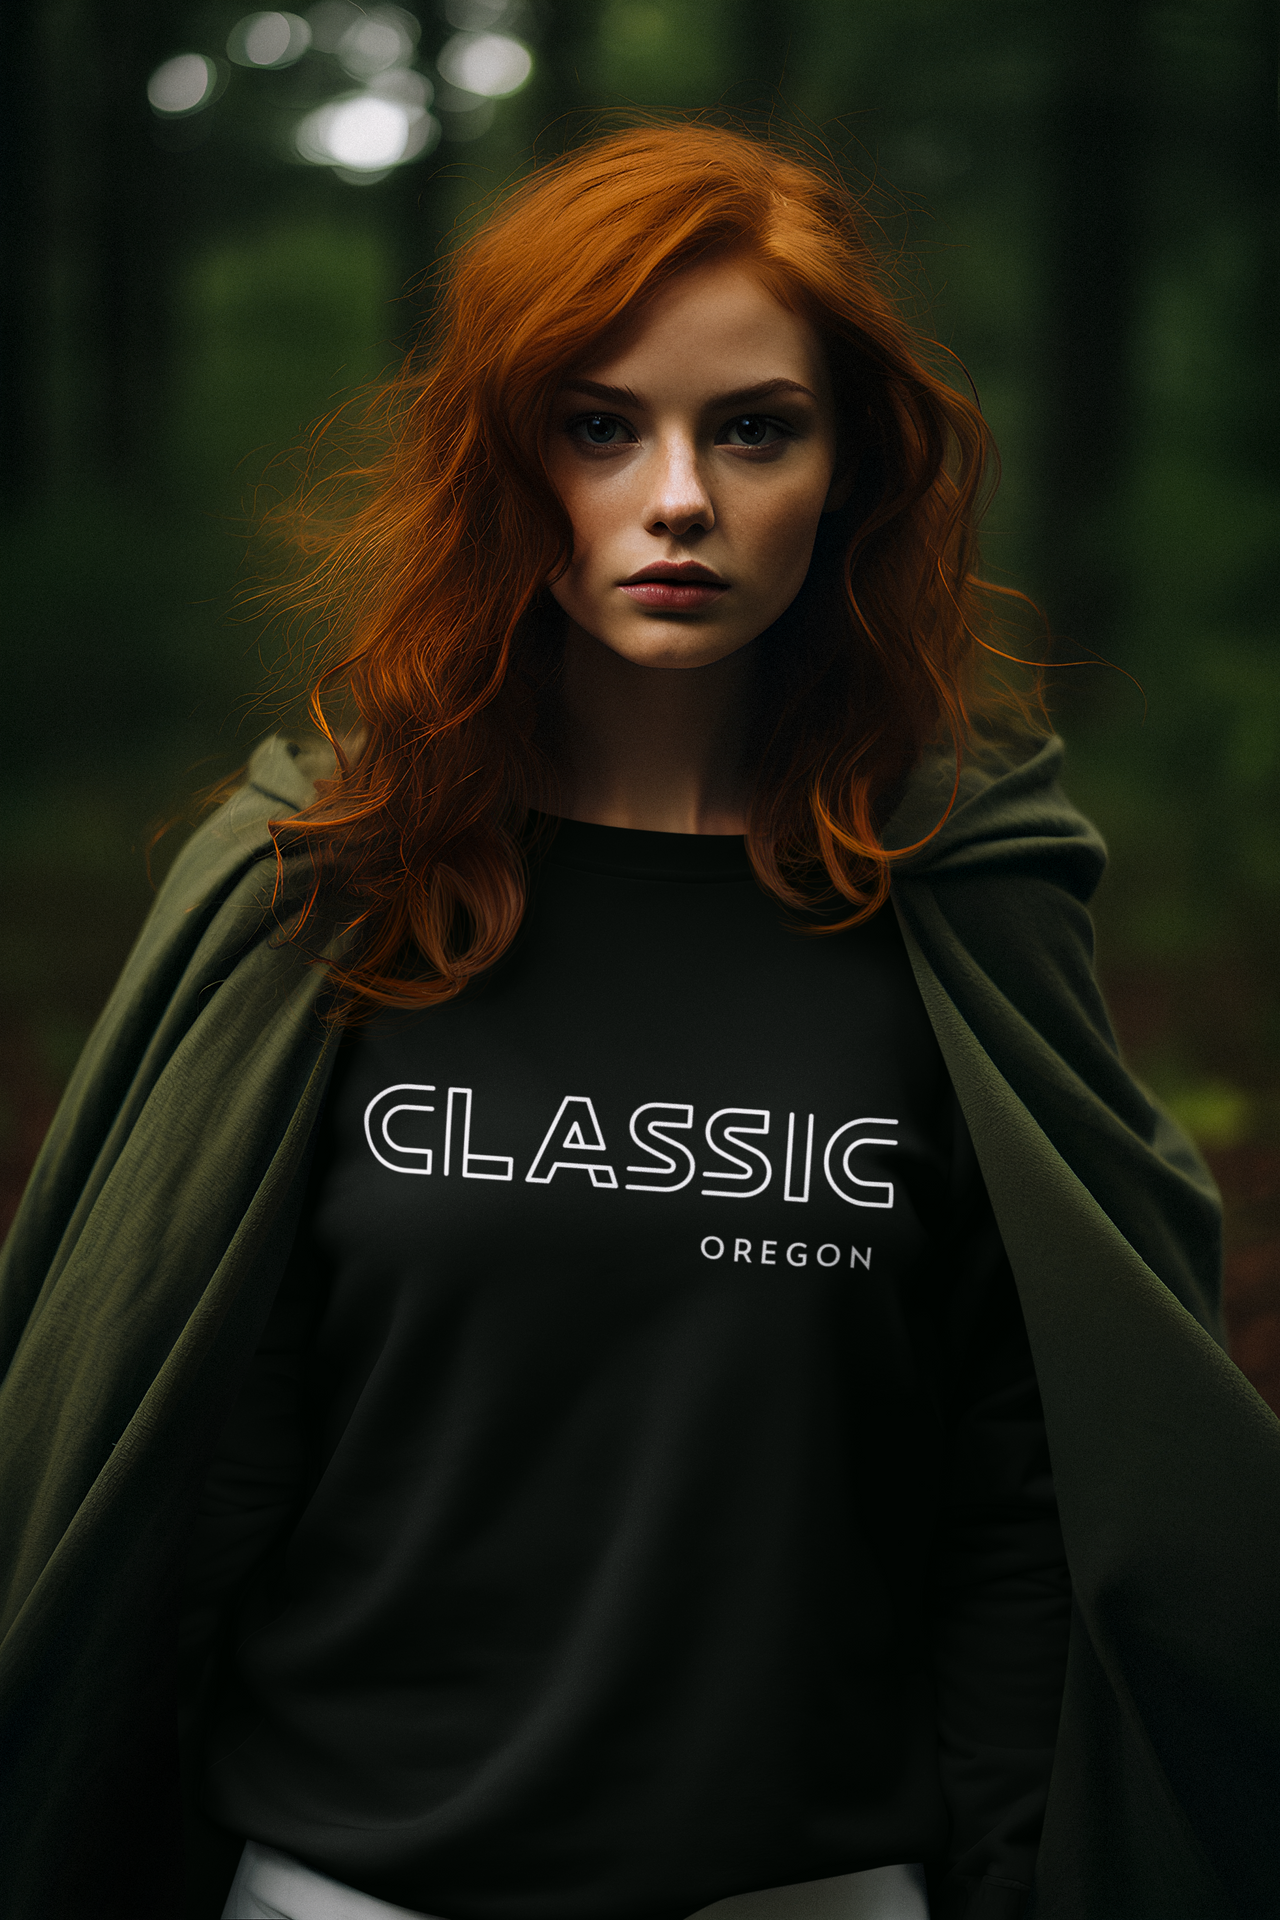 CLASSIC OREGON - Unisex Premium Sweatshirt